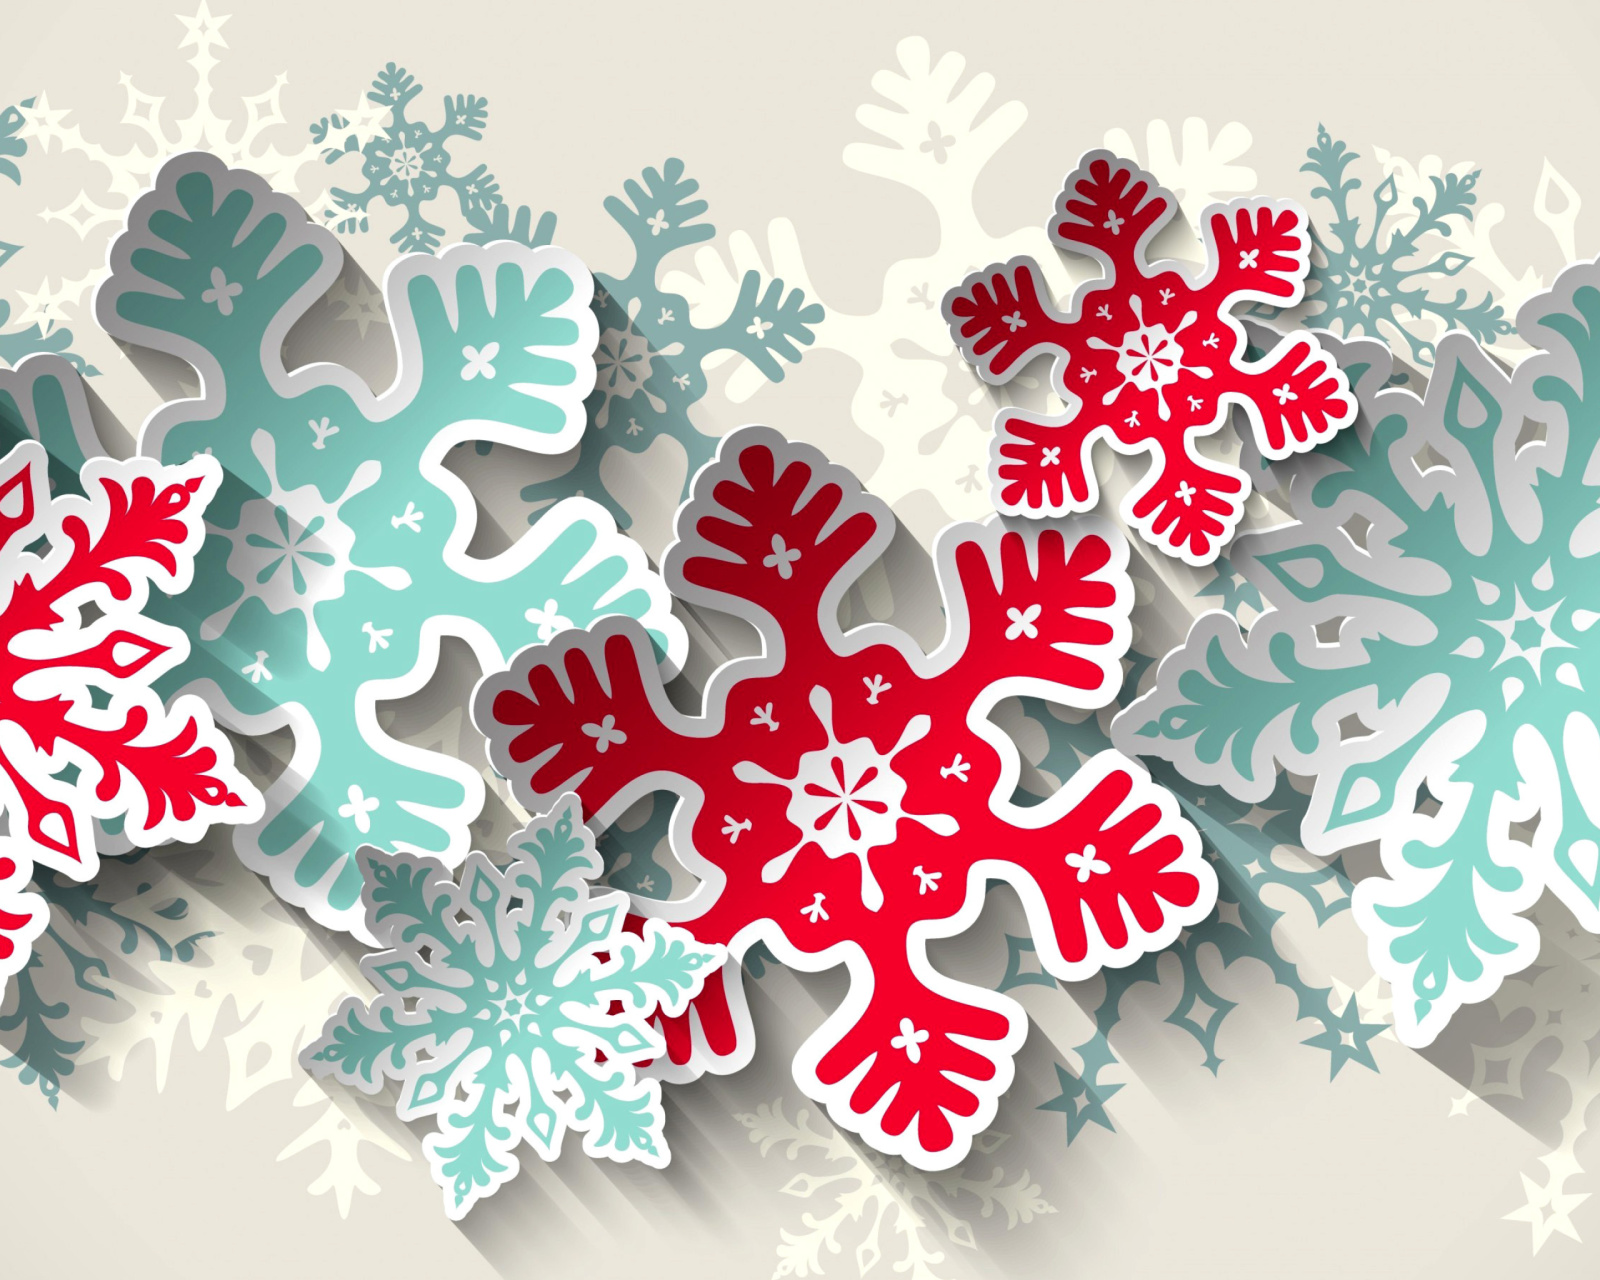 Das Snowflakes Decoration Wallpaper 1600x1280